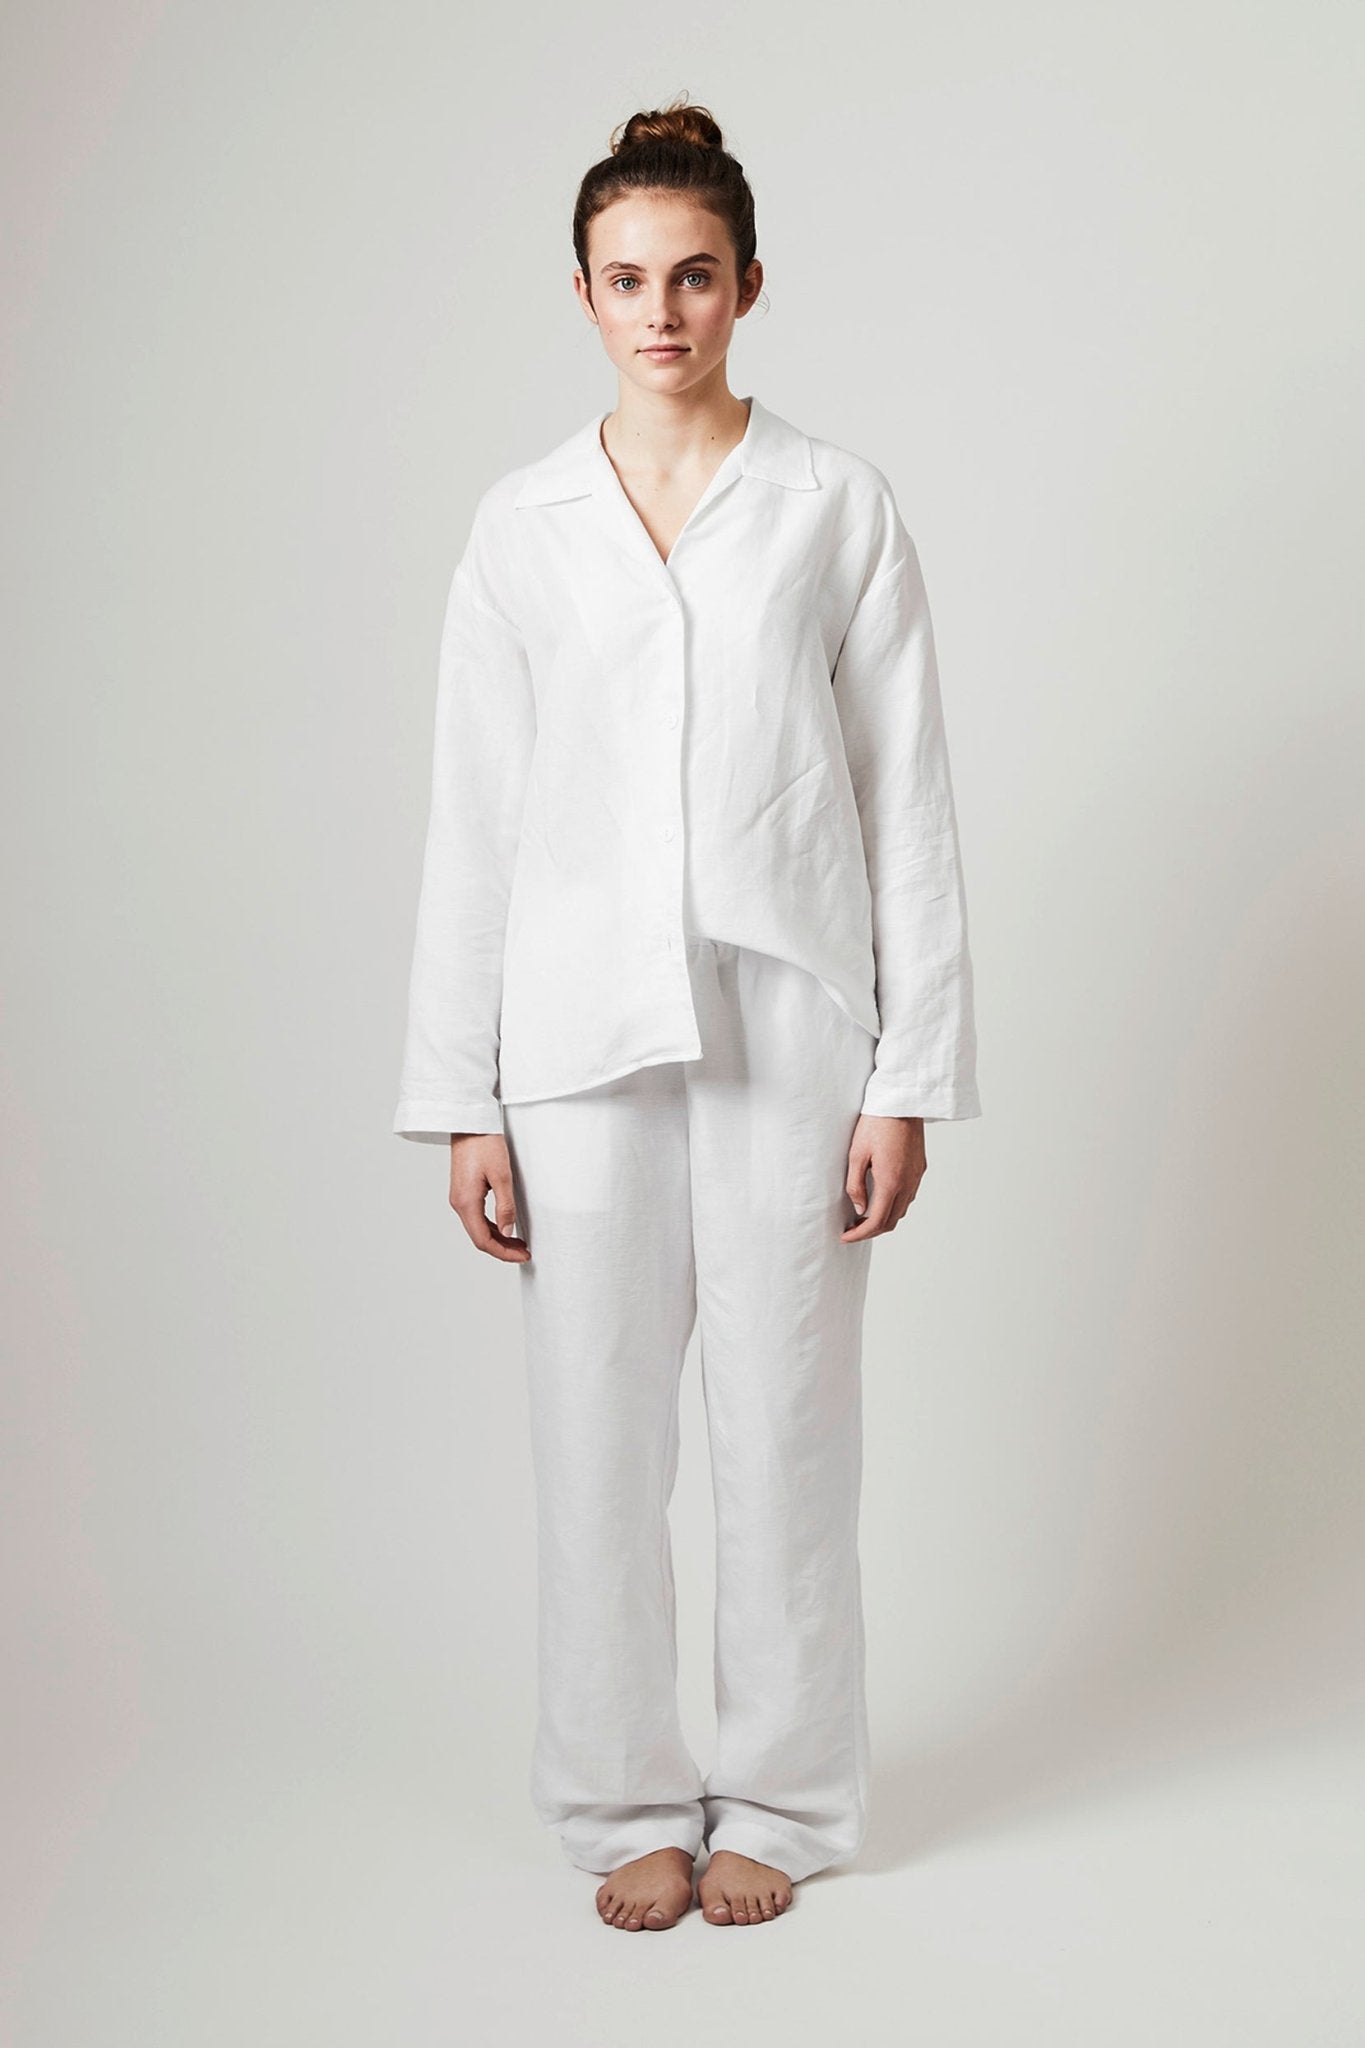 Halbleinen Homewear PJ Shirt in Weiß Model Bildausschnitt 1